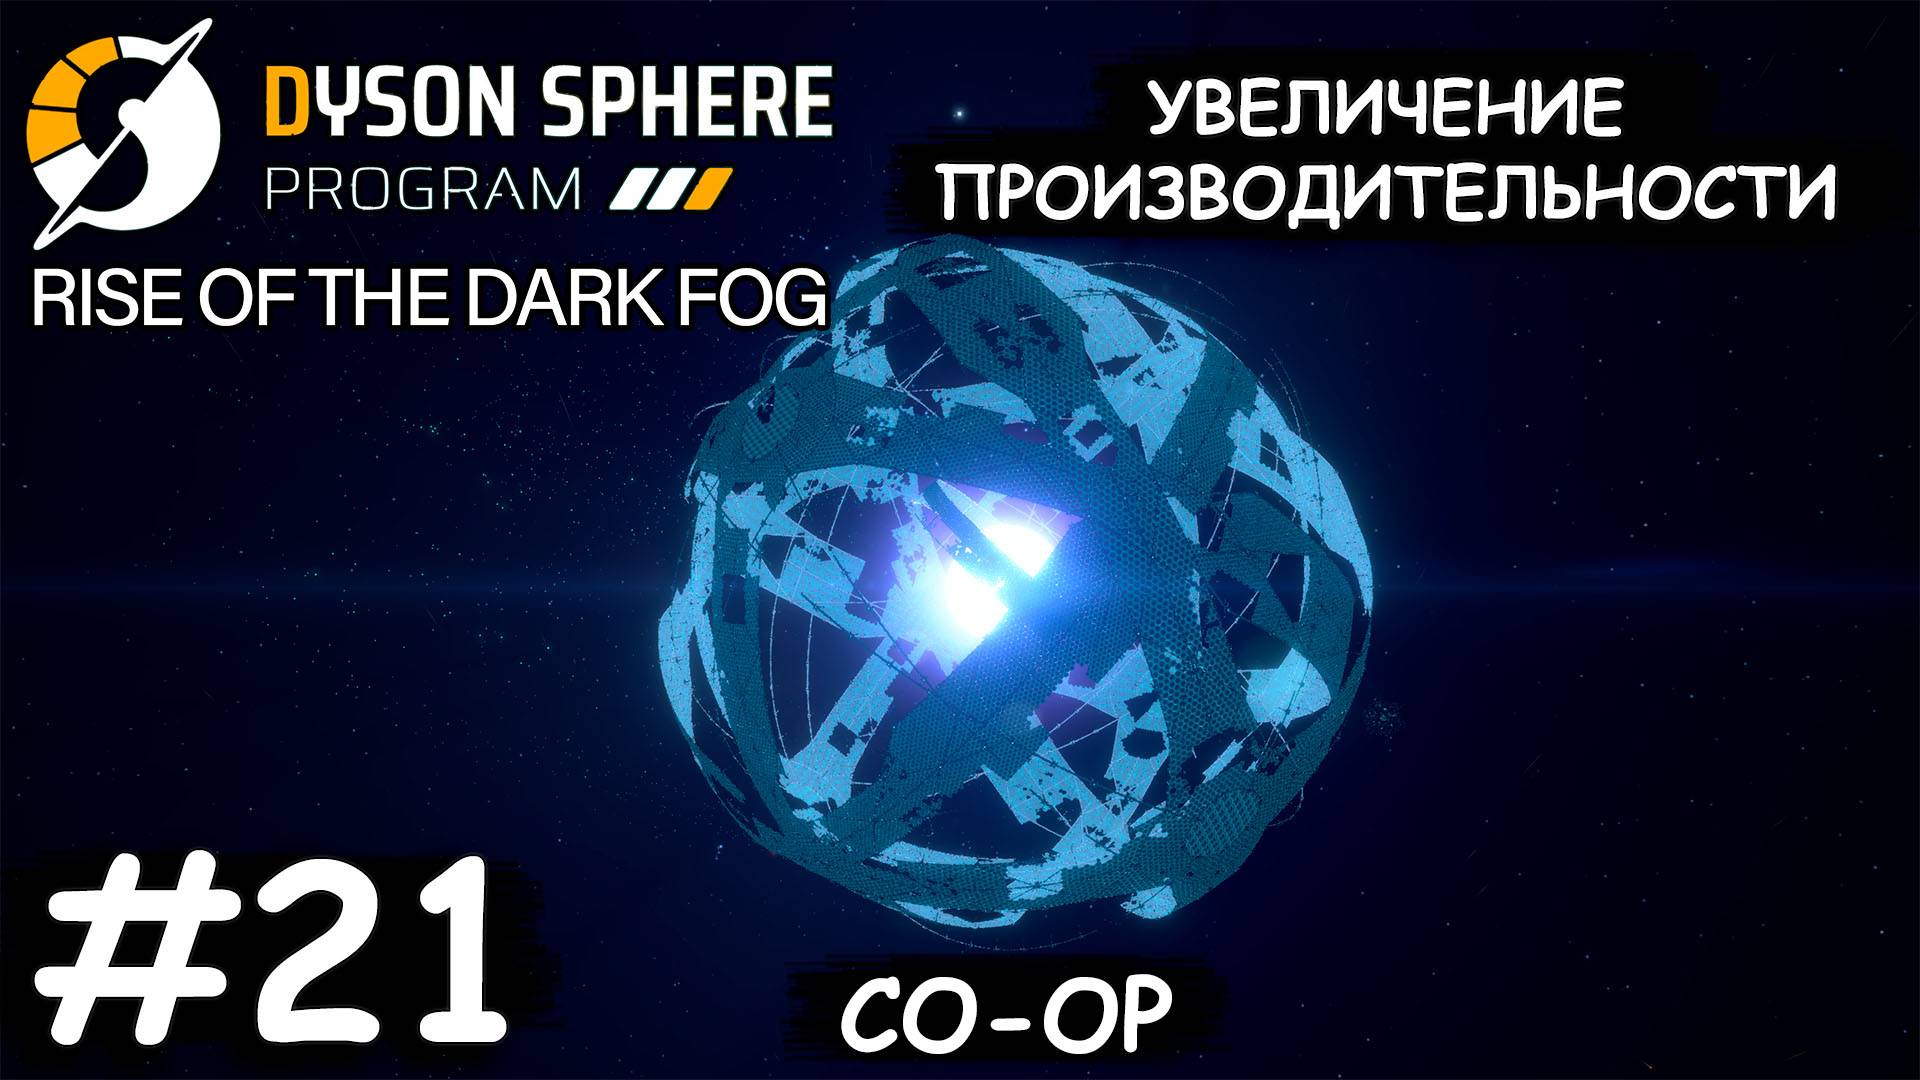 Увеличение производительности - Dyson Sphere Program COOP #21